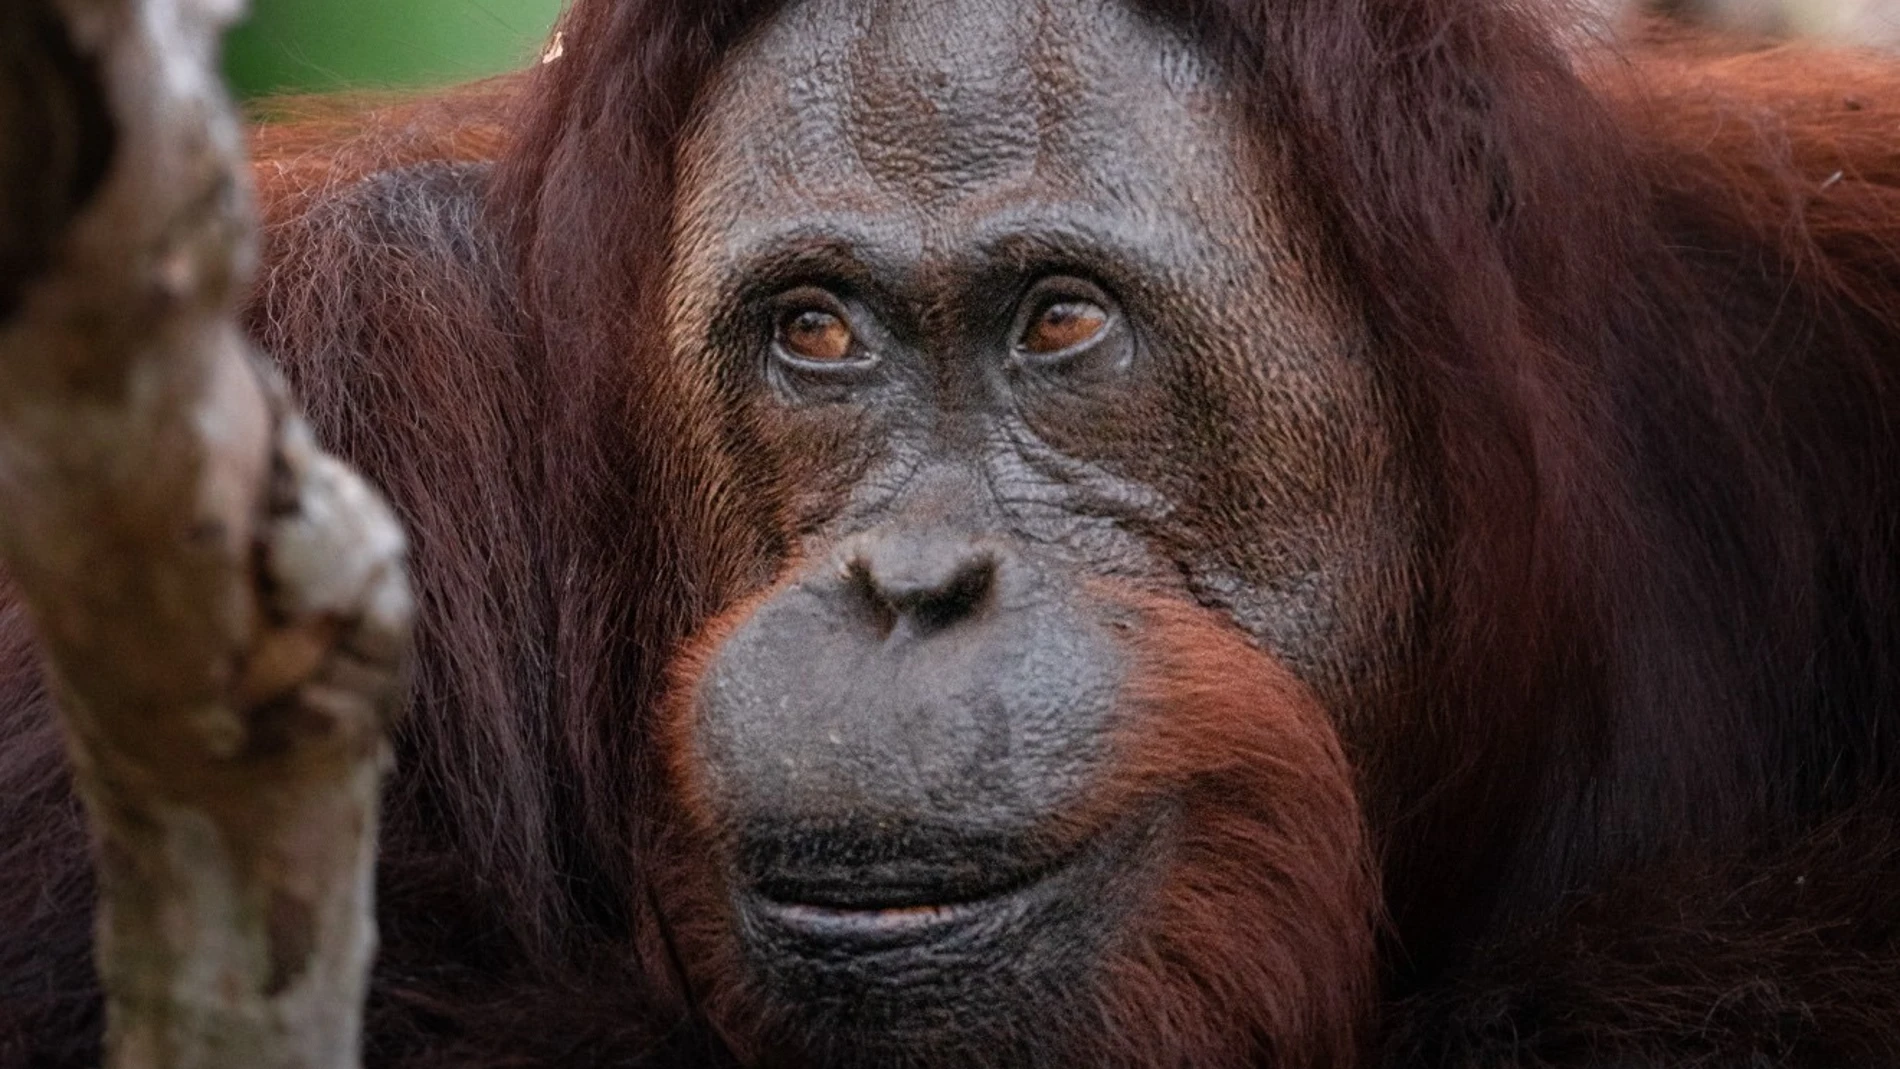 Orangután juvenil tirándole del pelo a su madre 